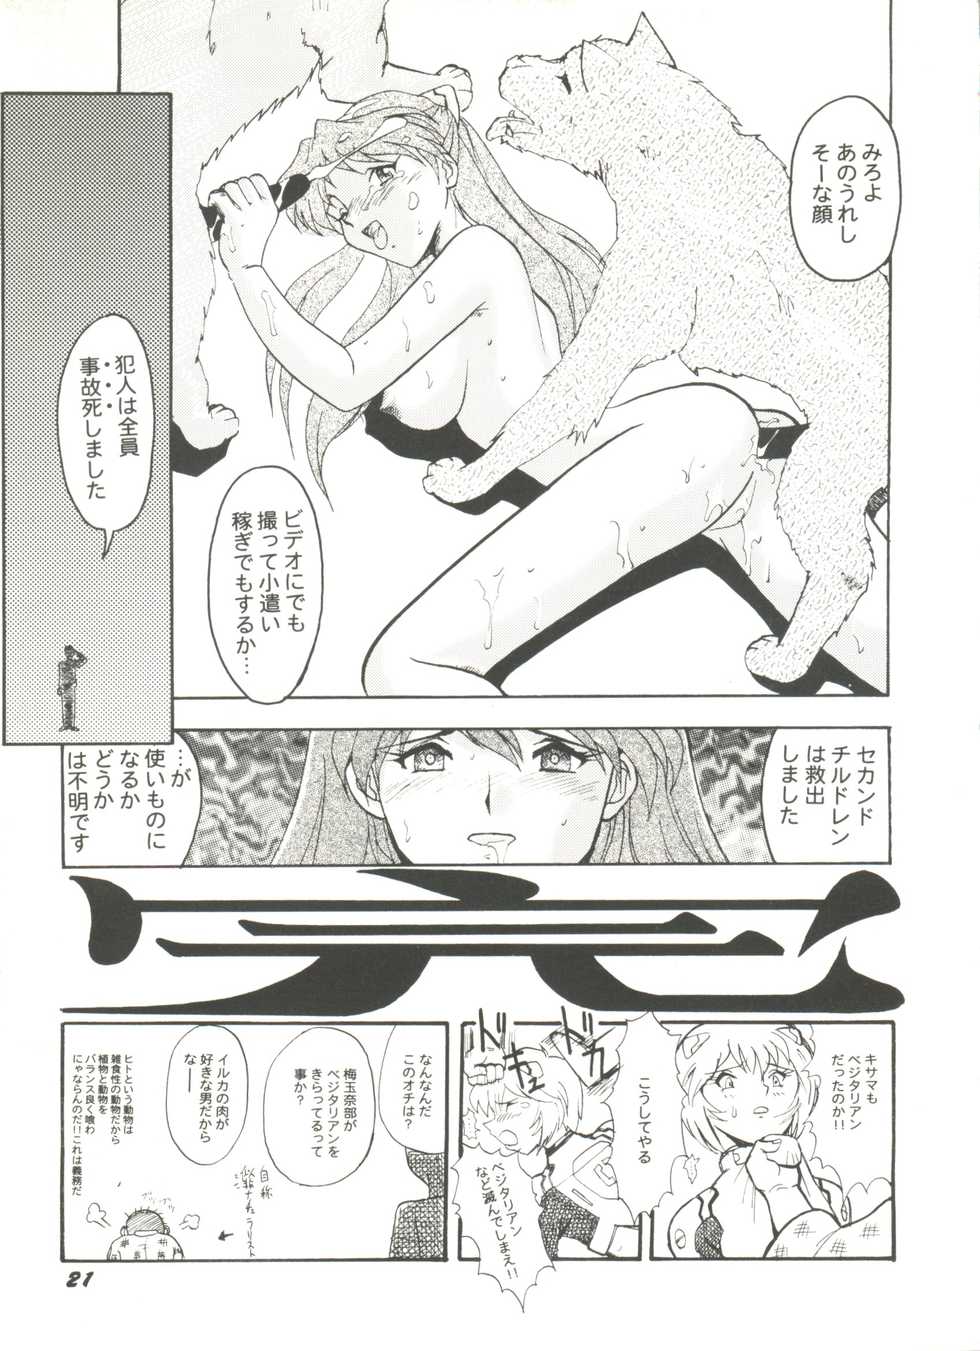 [Anthology] Doujin Anthology Bishoujo Gumi 9 (Various) - Page 25